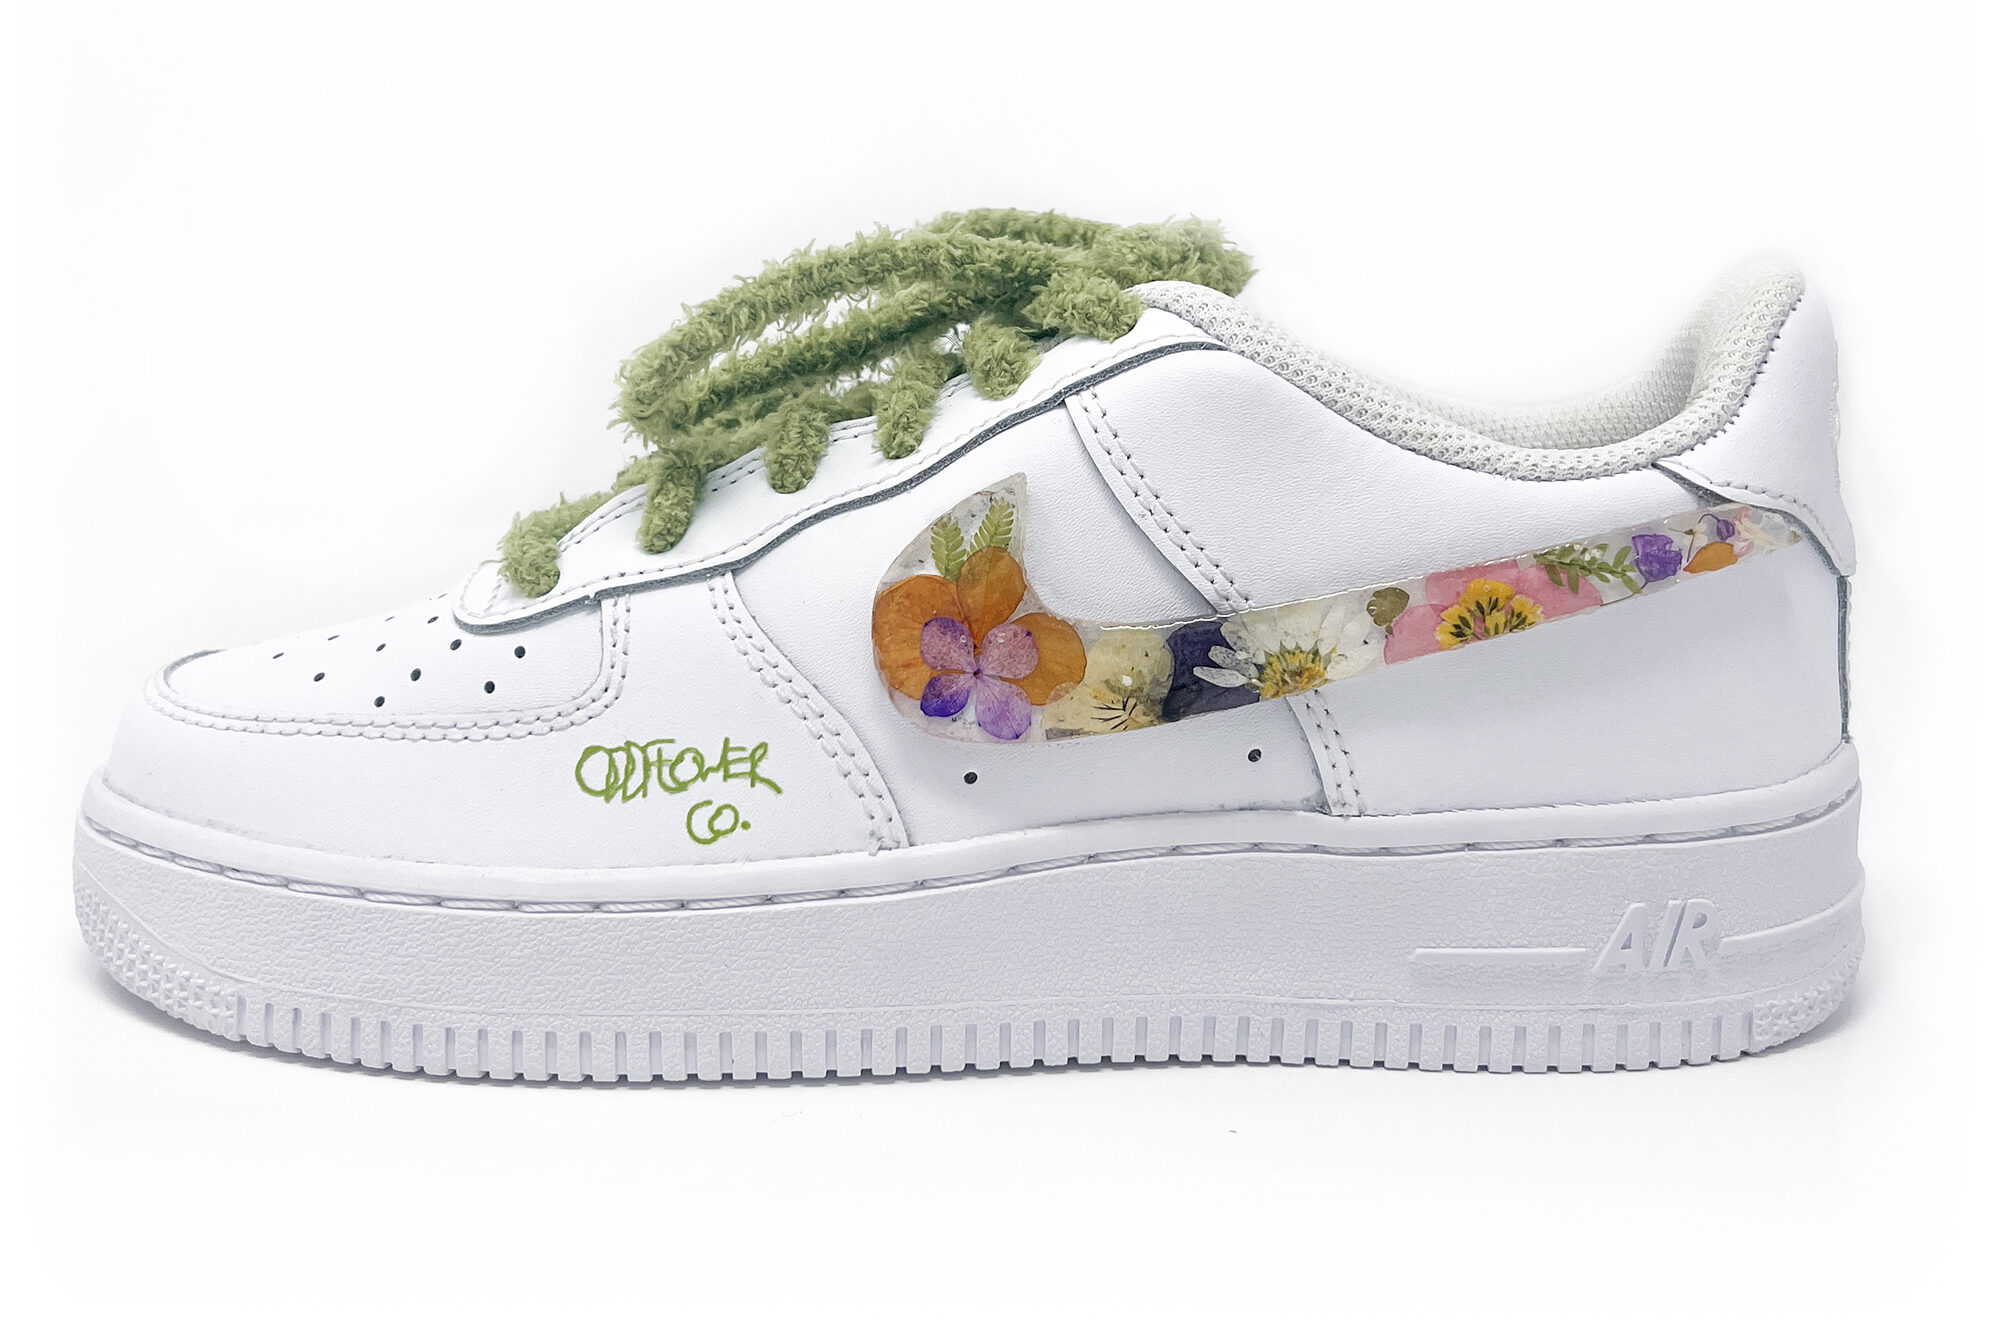 Custom Sneakers Oddflower Pressed Flowers Swoosh